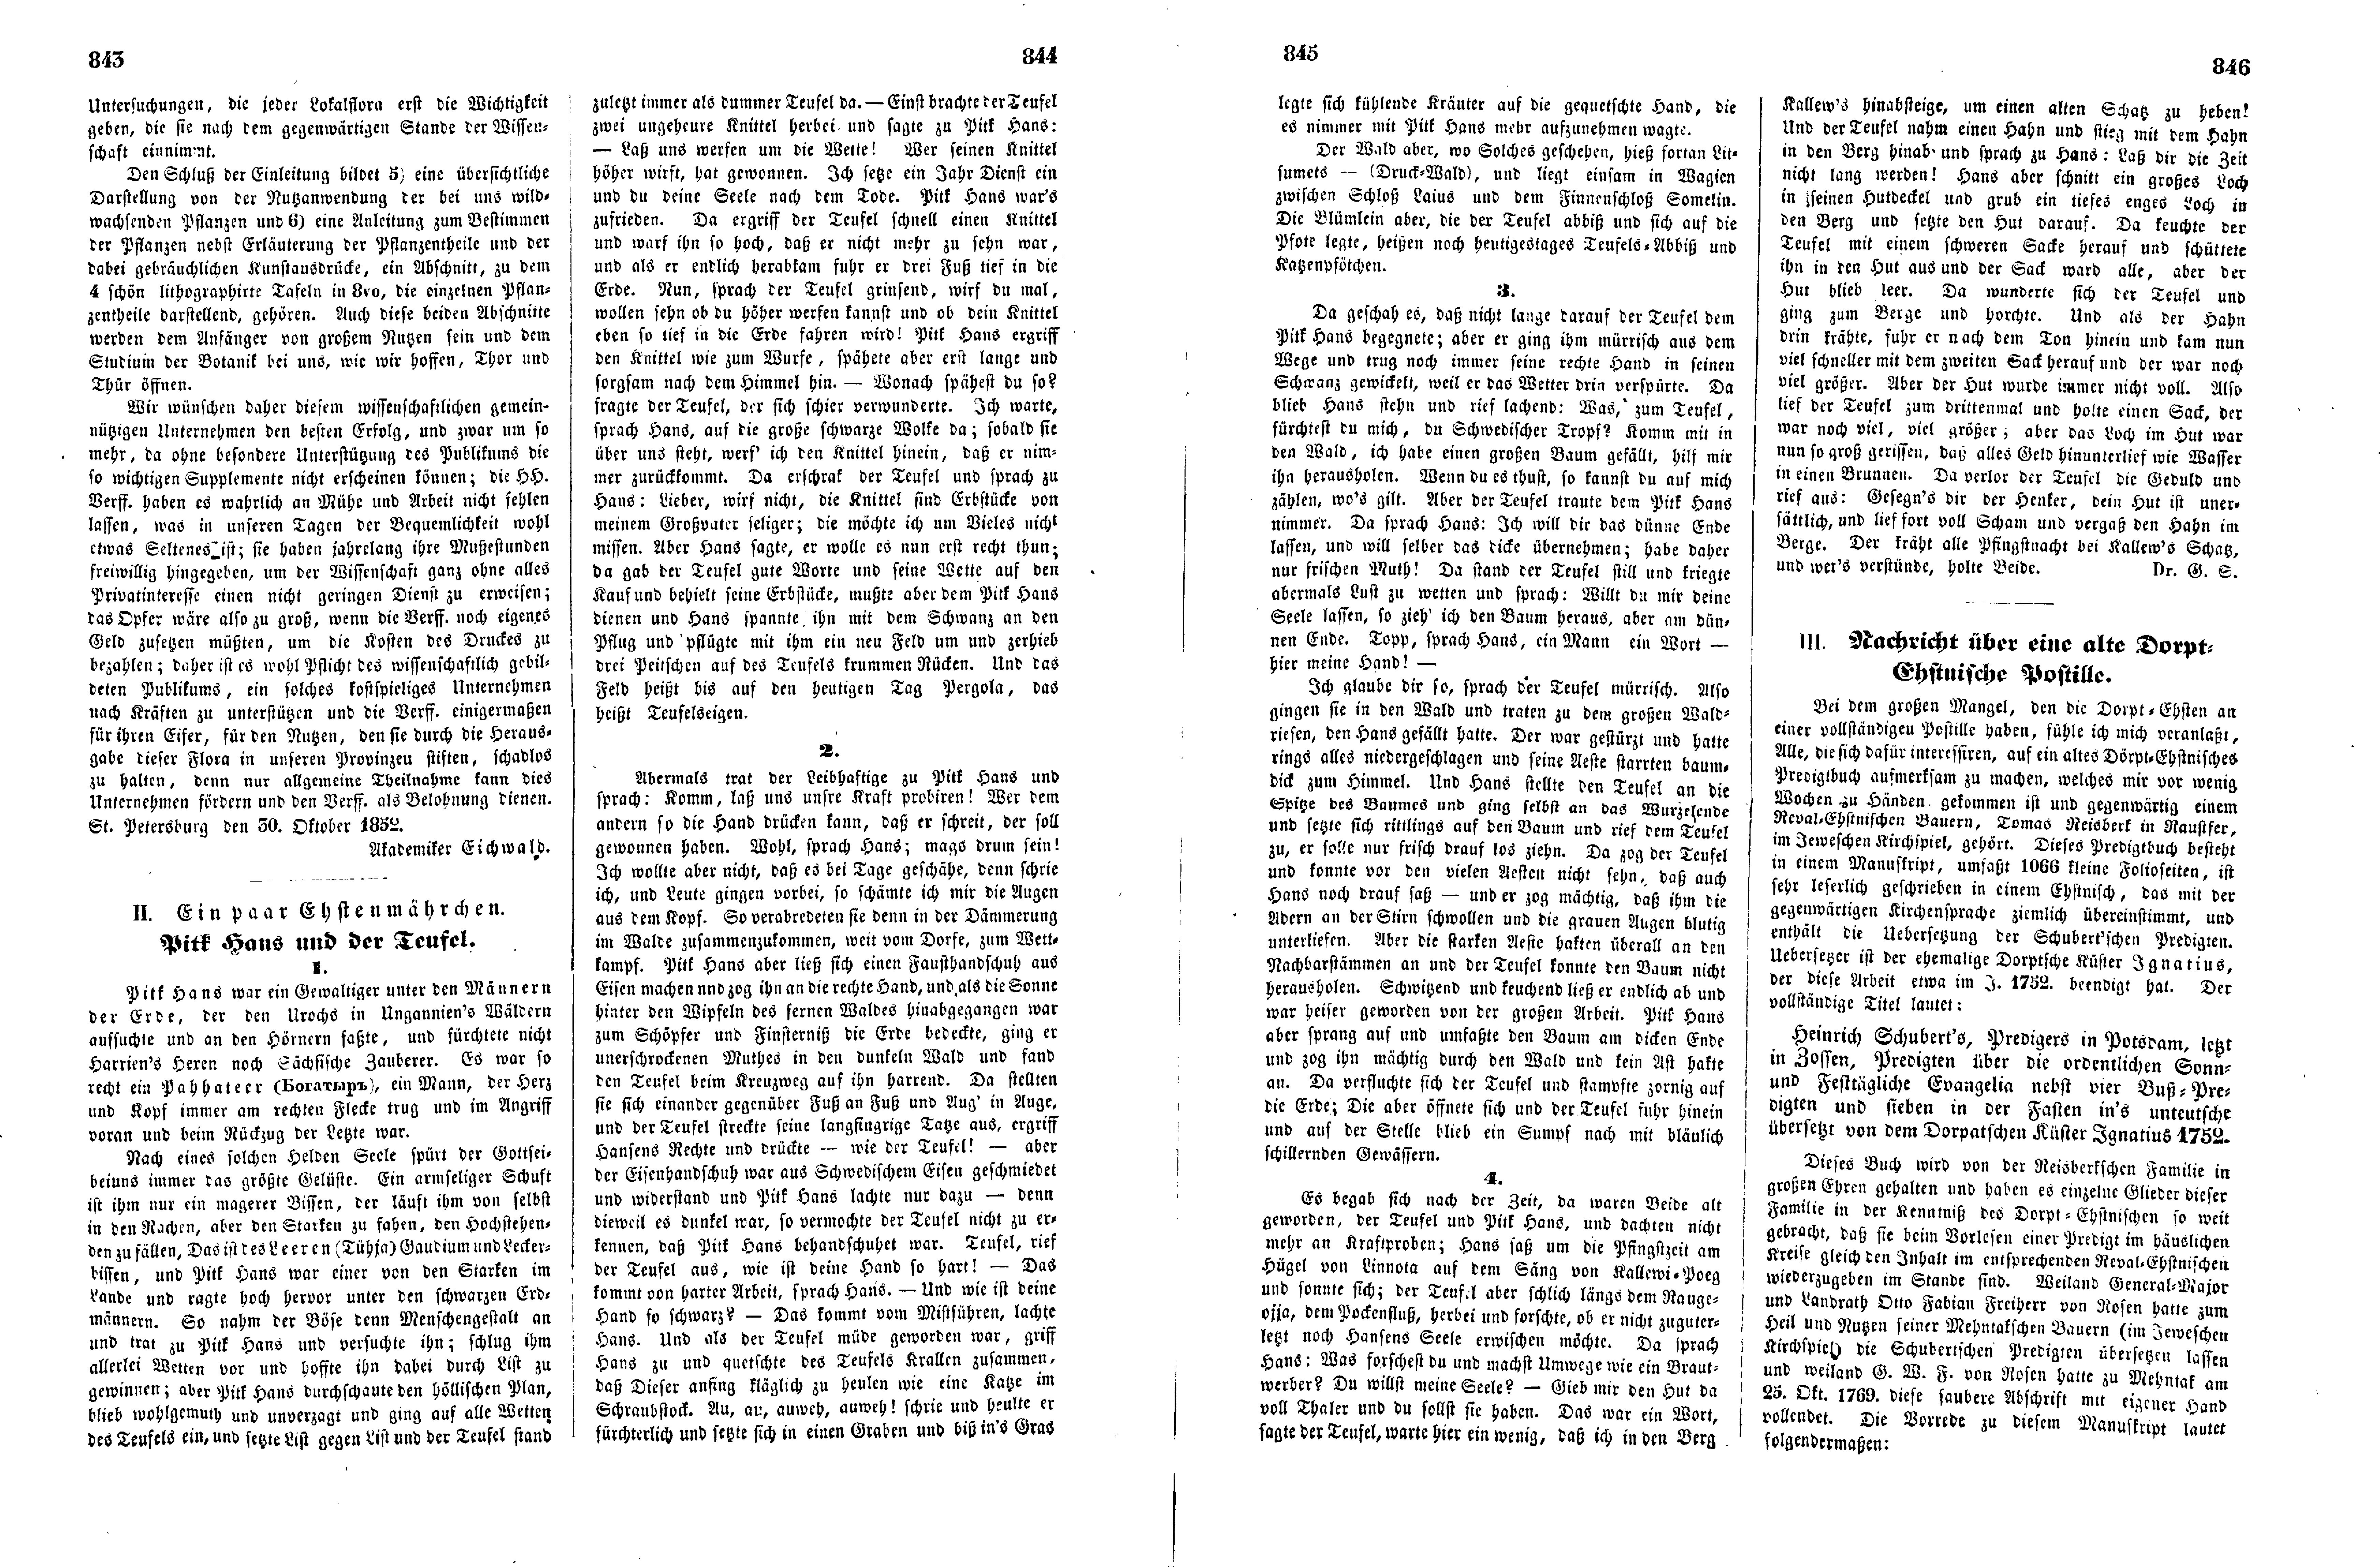 Pitk Hans und der Teufel (Ein paar Ehstenmährchen) (1852) | 1. (843-846) Haupttext